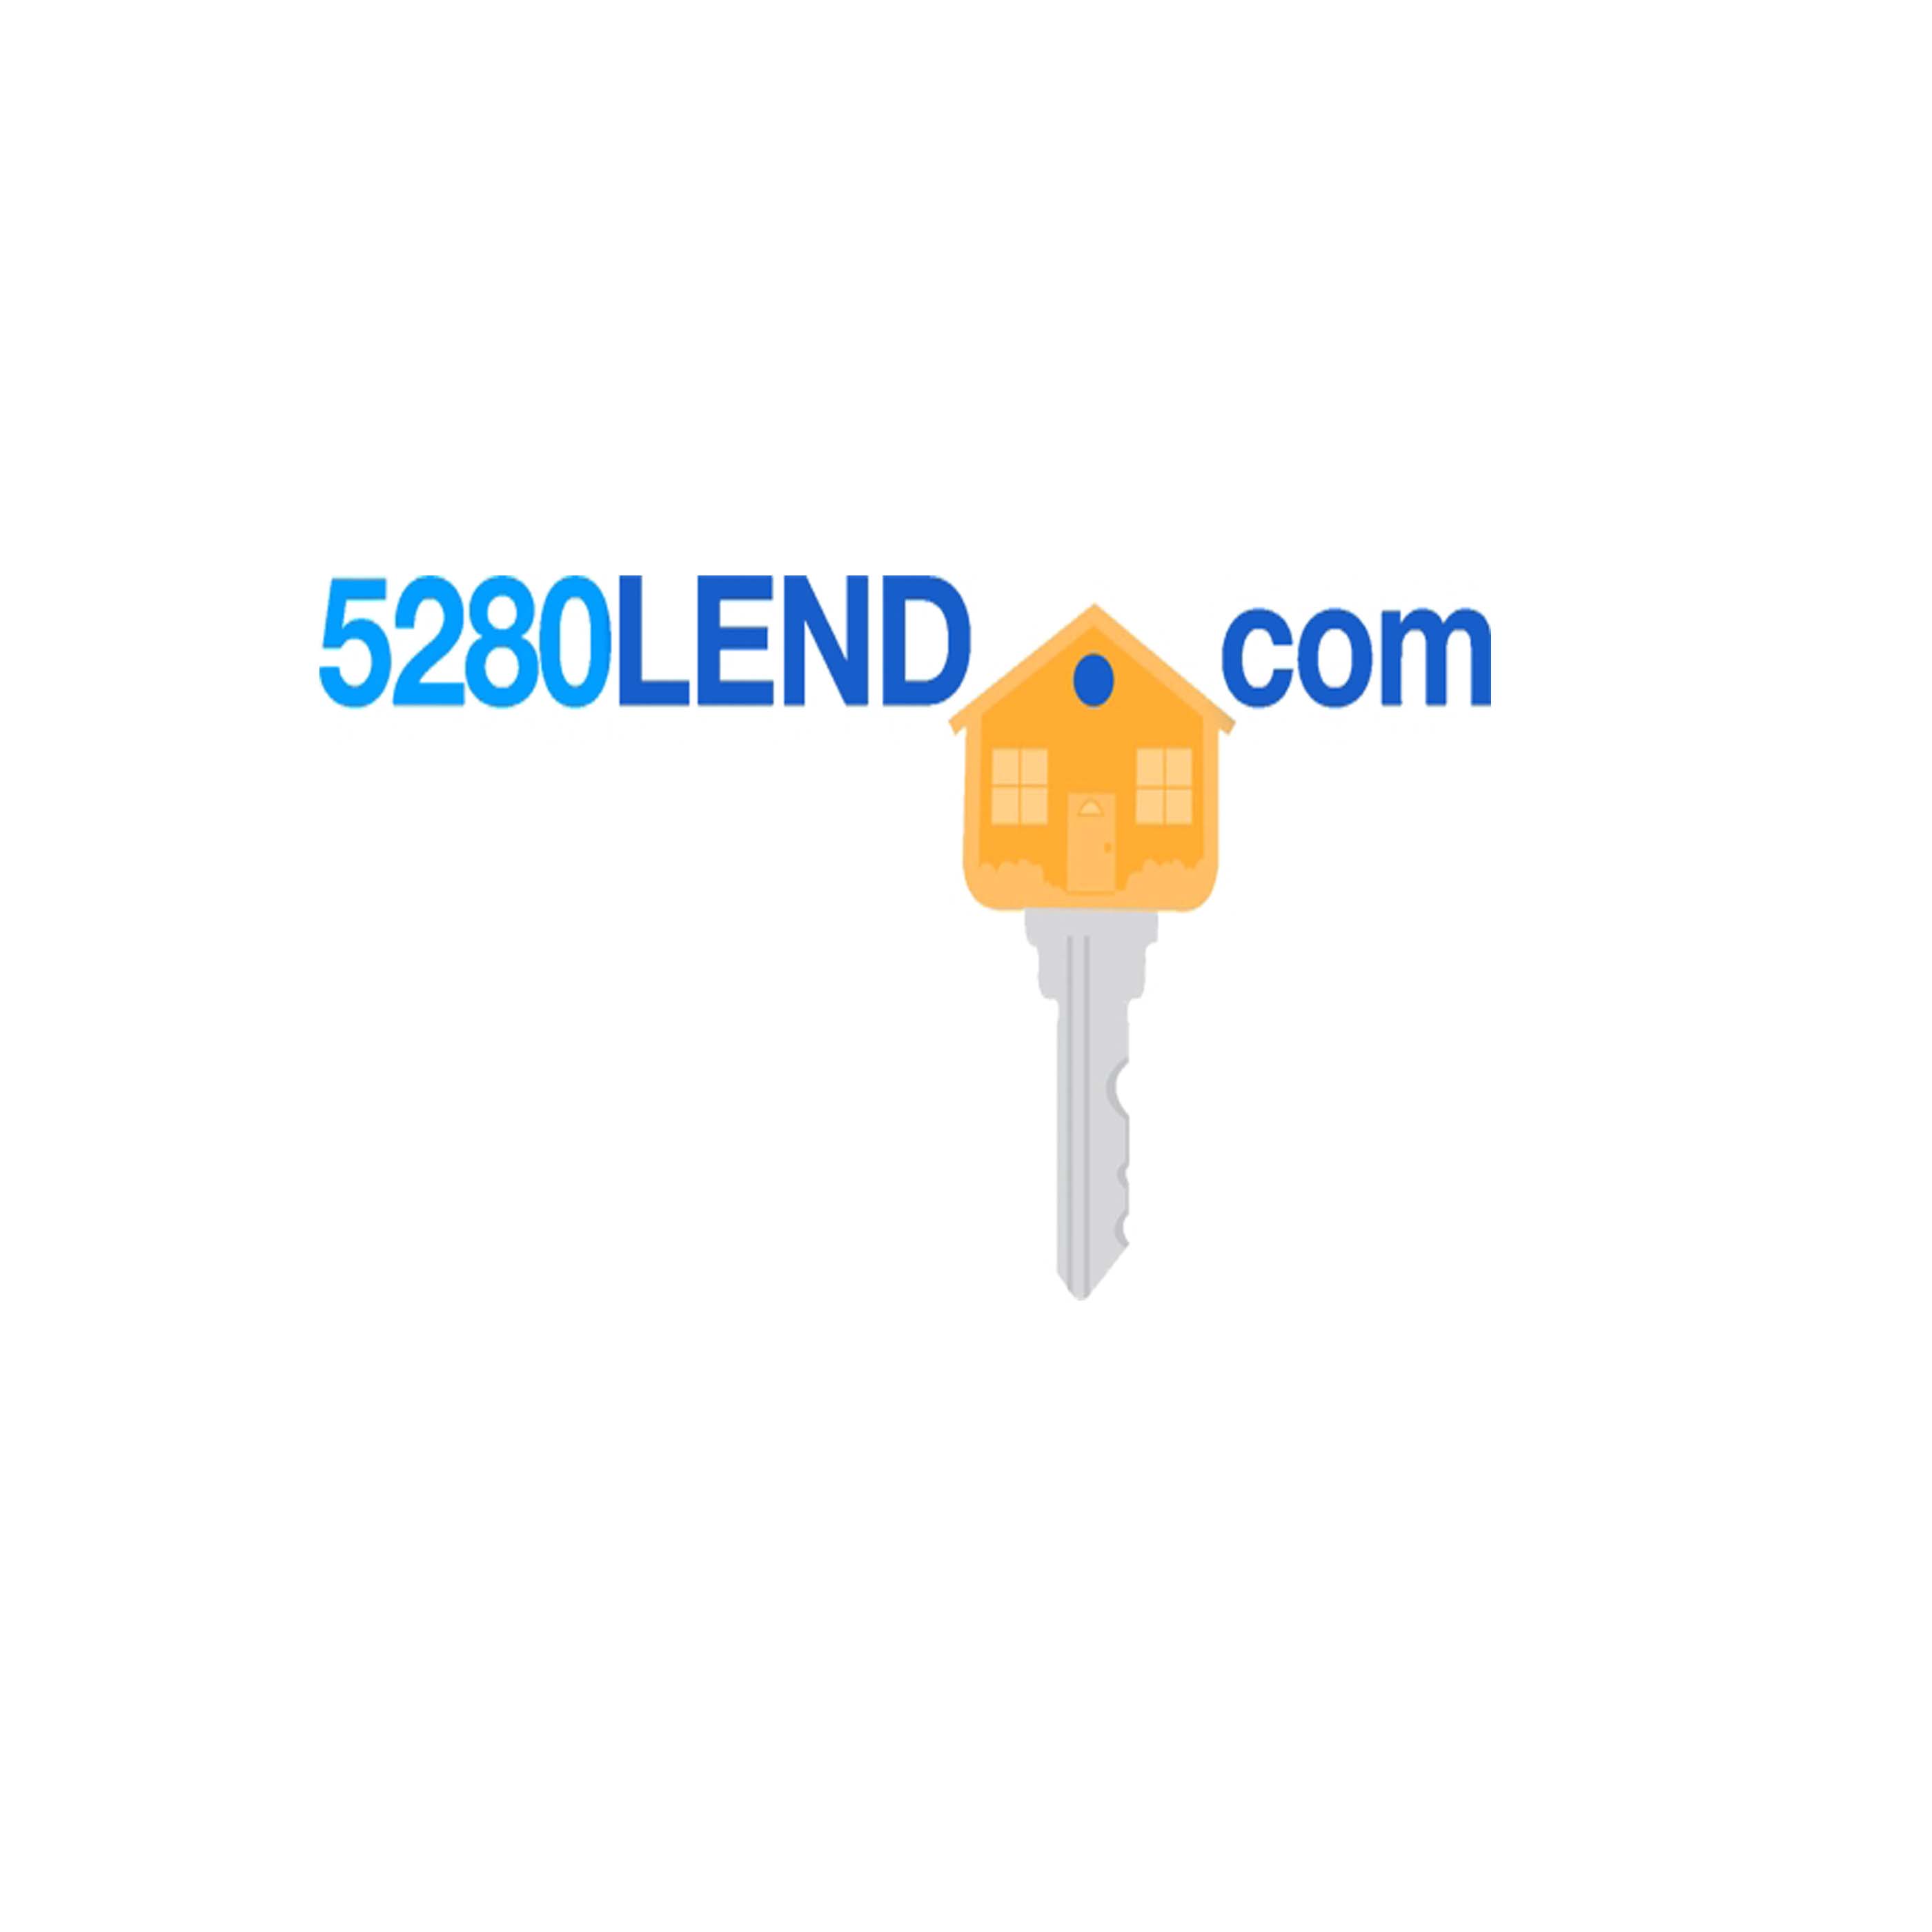 5280lend.com